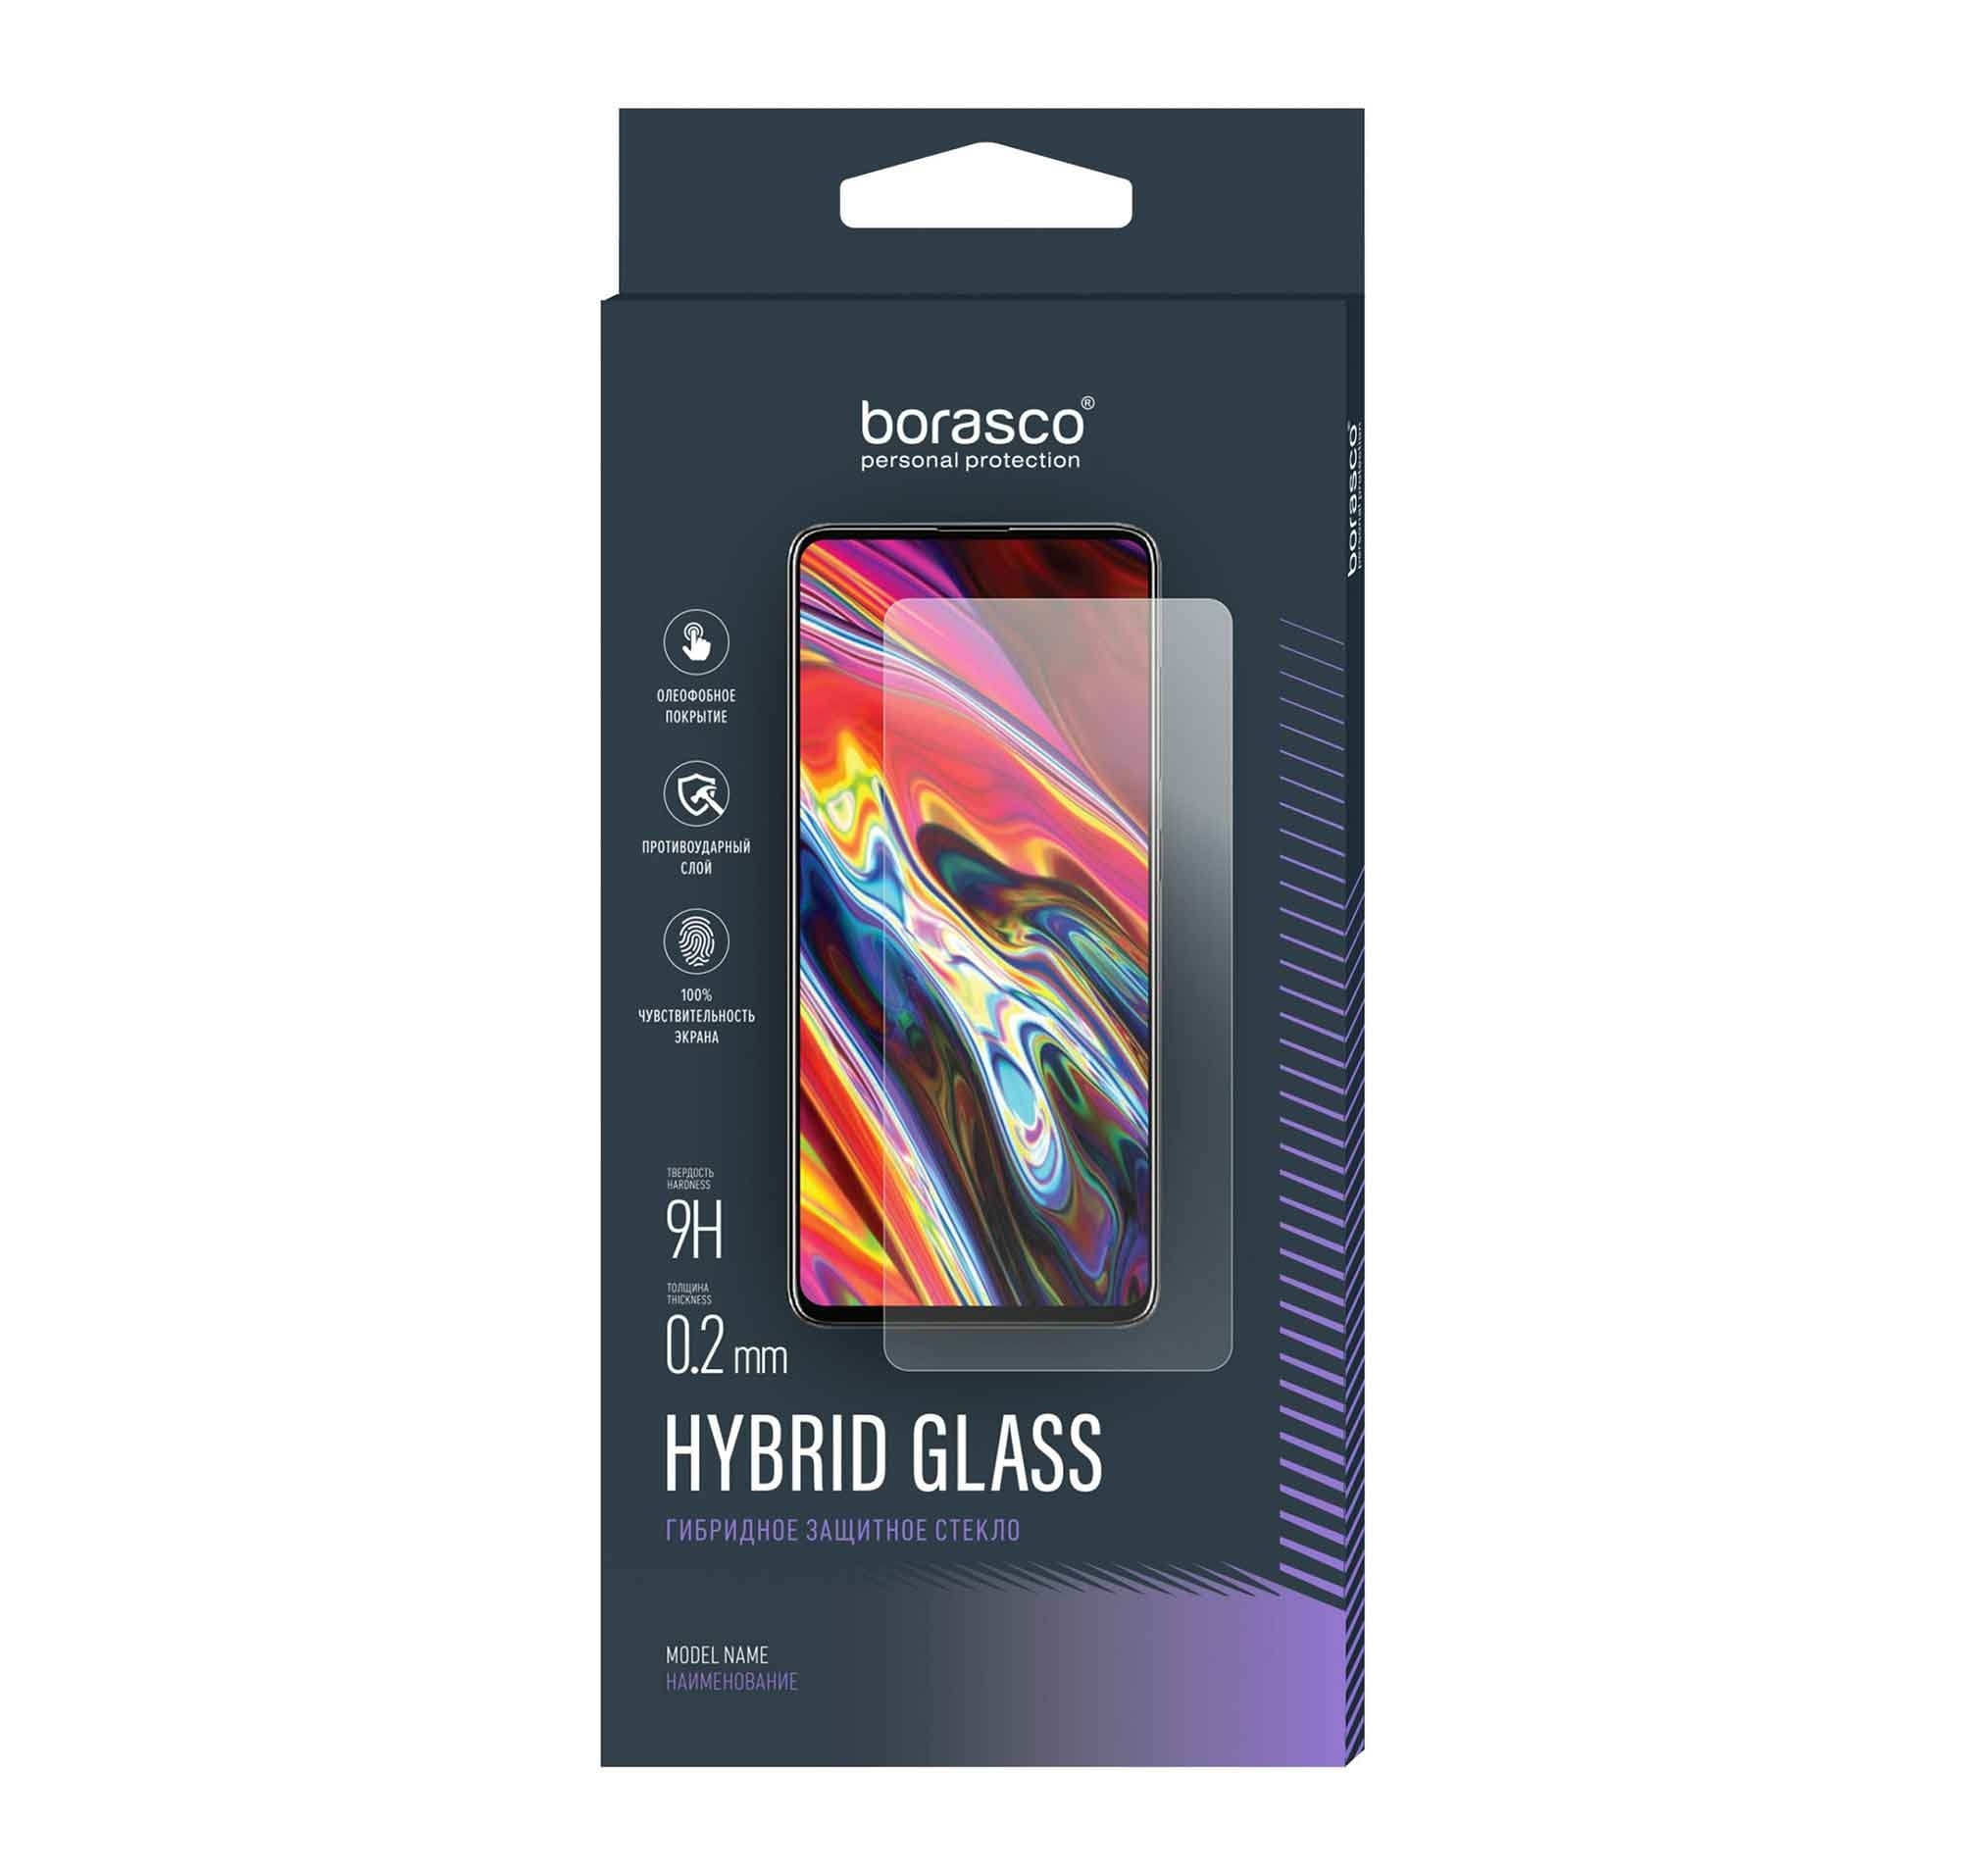 Стекло защитное BoraSCO Hybrid Glass для Oukitel F150 R2022 чехол mypads бакс банни и еда для oukitel f150 r2022 задняя панель накладка бампер